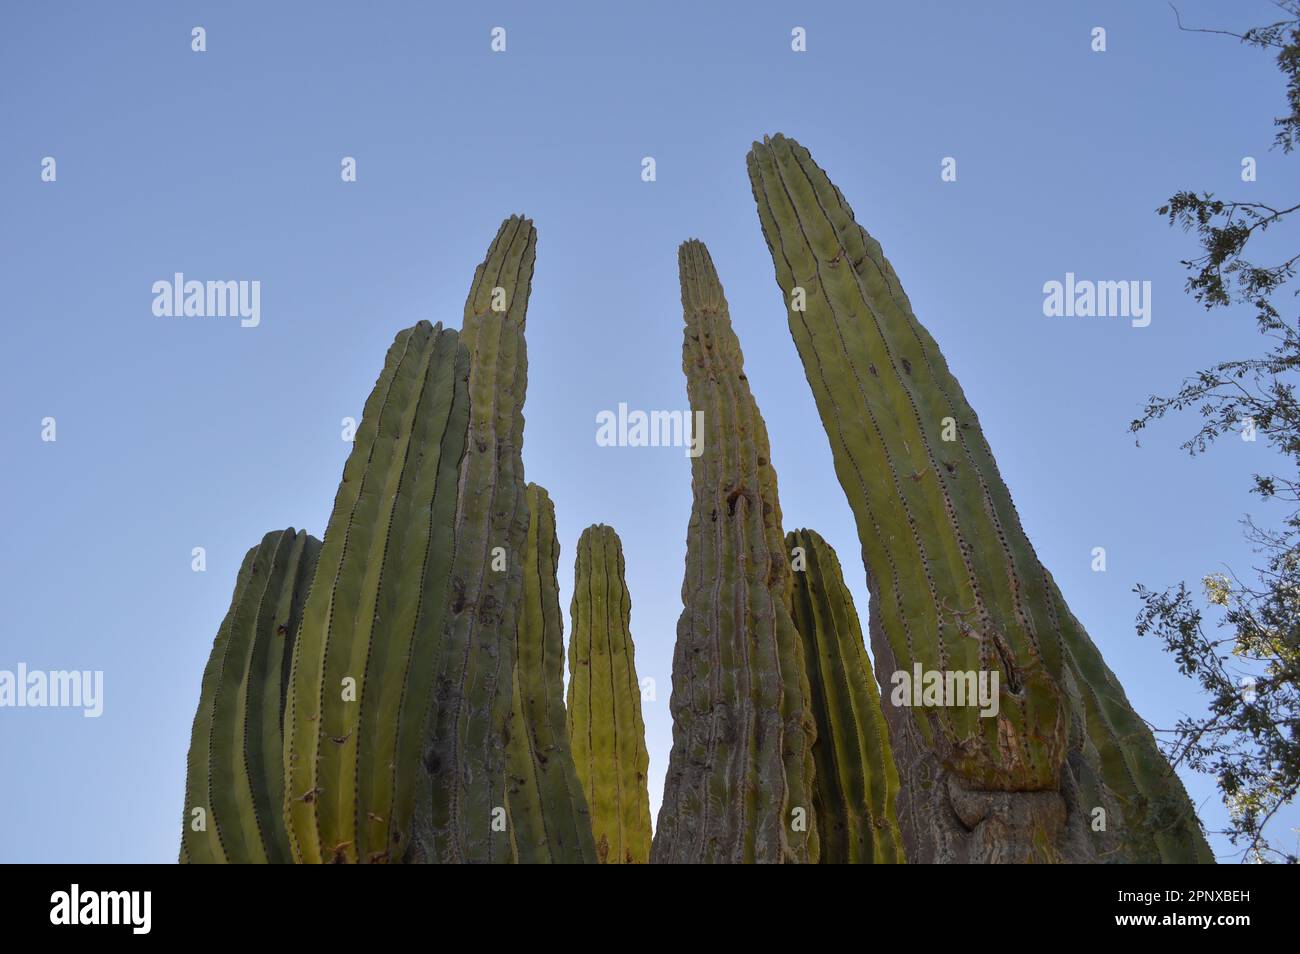 Las imágenes fueron tomadas en un municipio de Baja California Sur, llamado Mulegé. Las plantas están en área de un volcán llamado Las Tres Vírgenes. Stock Photo